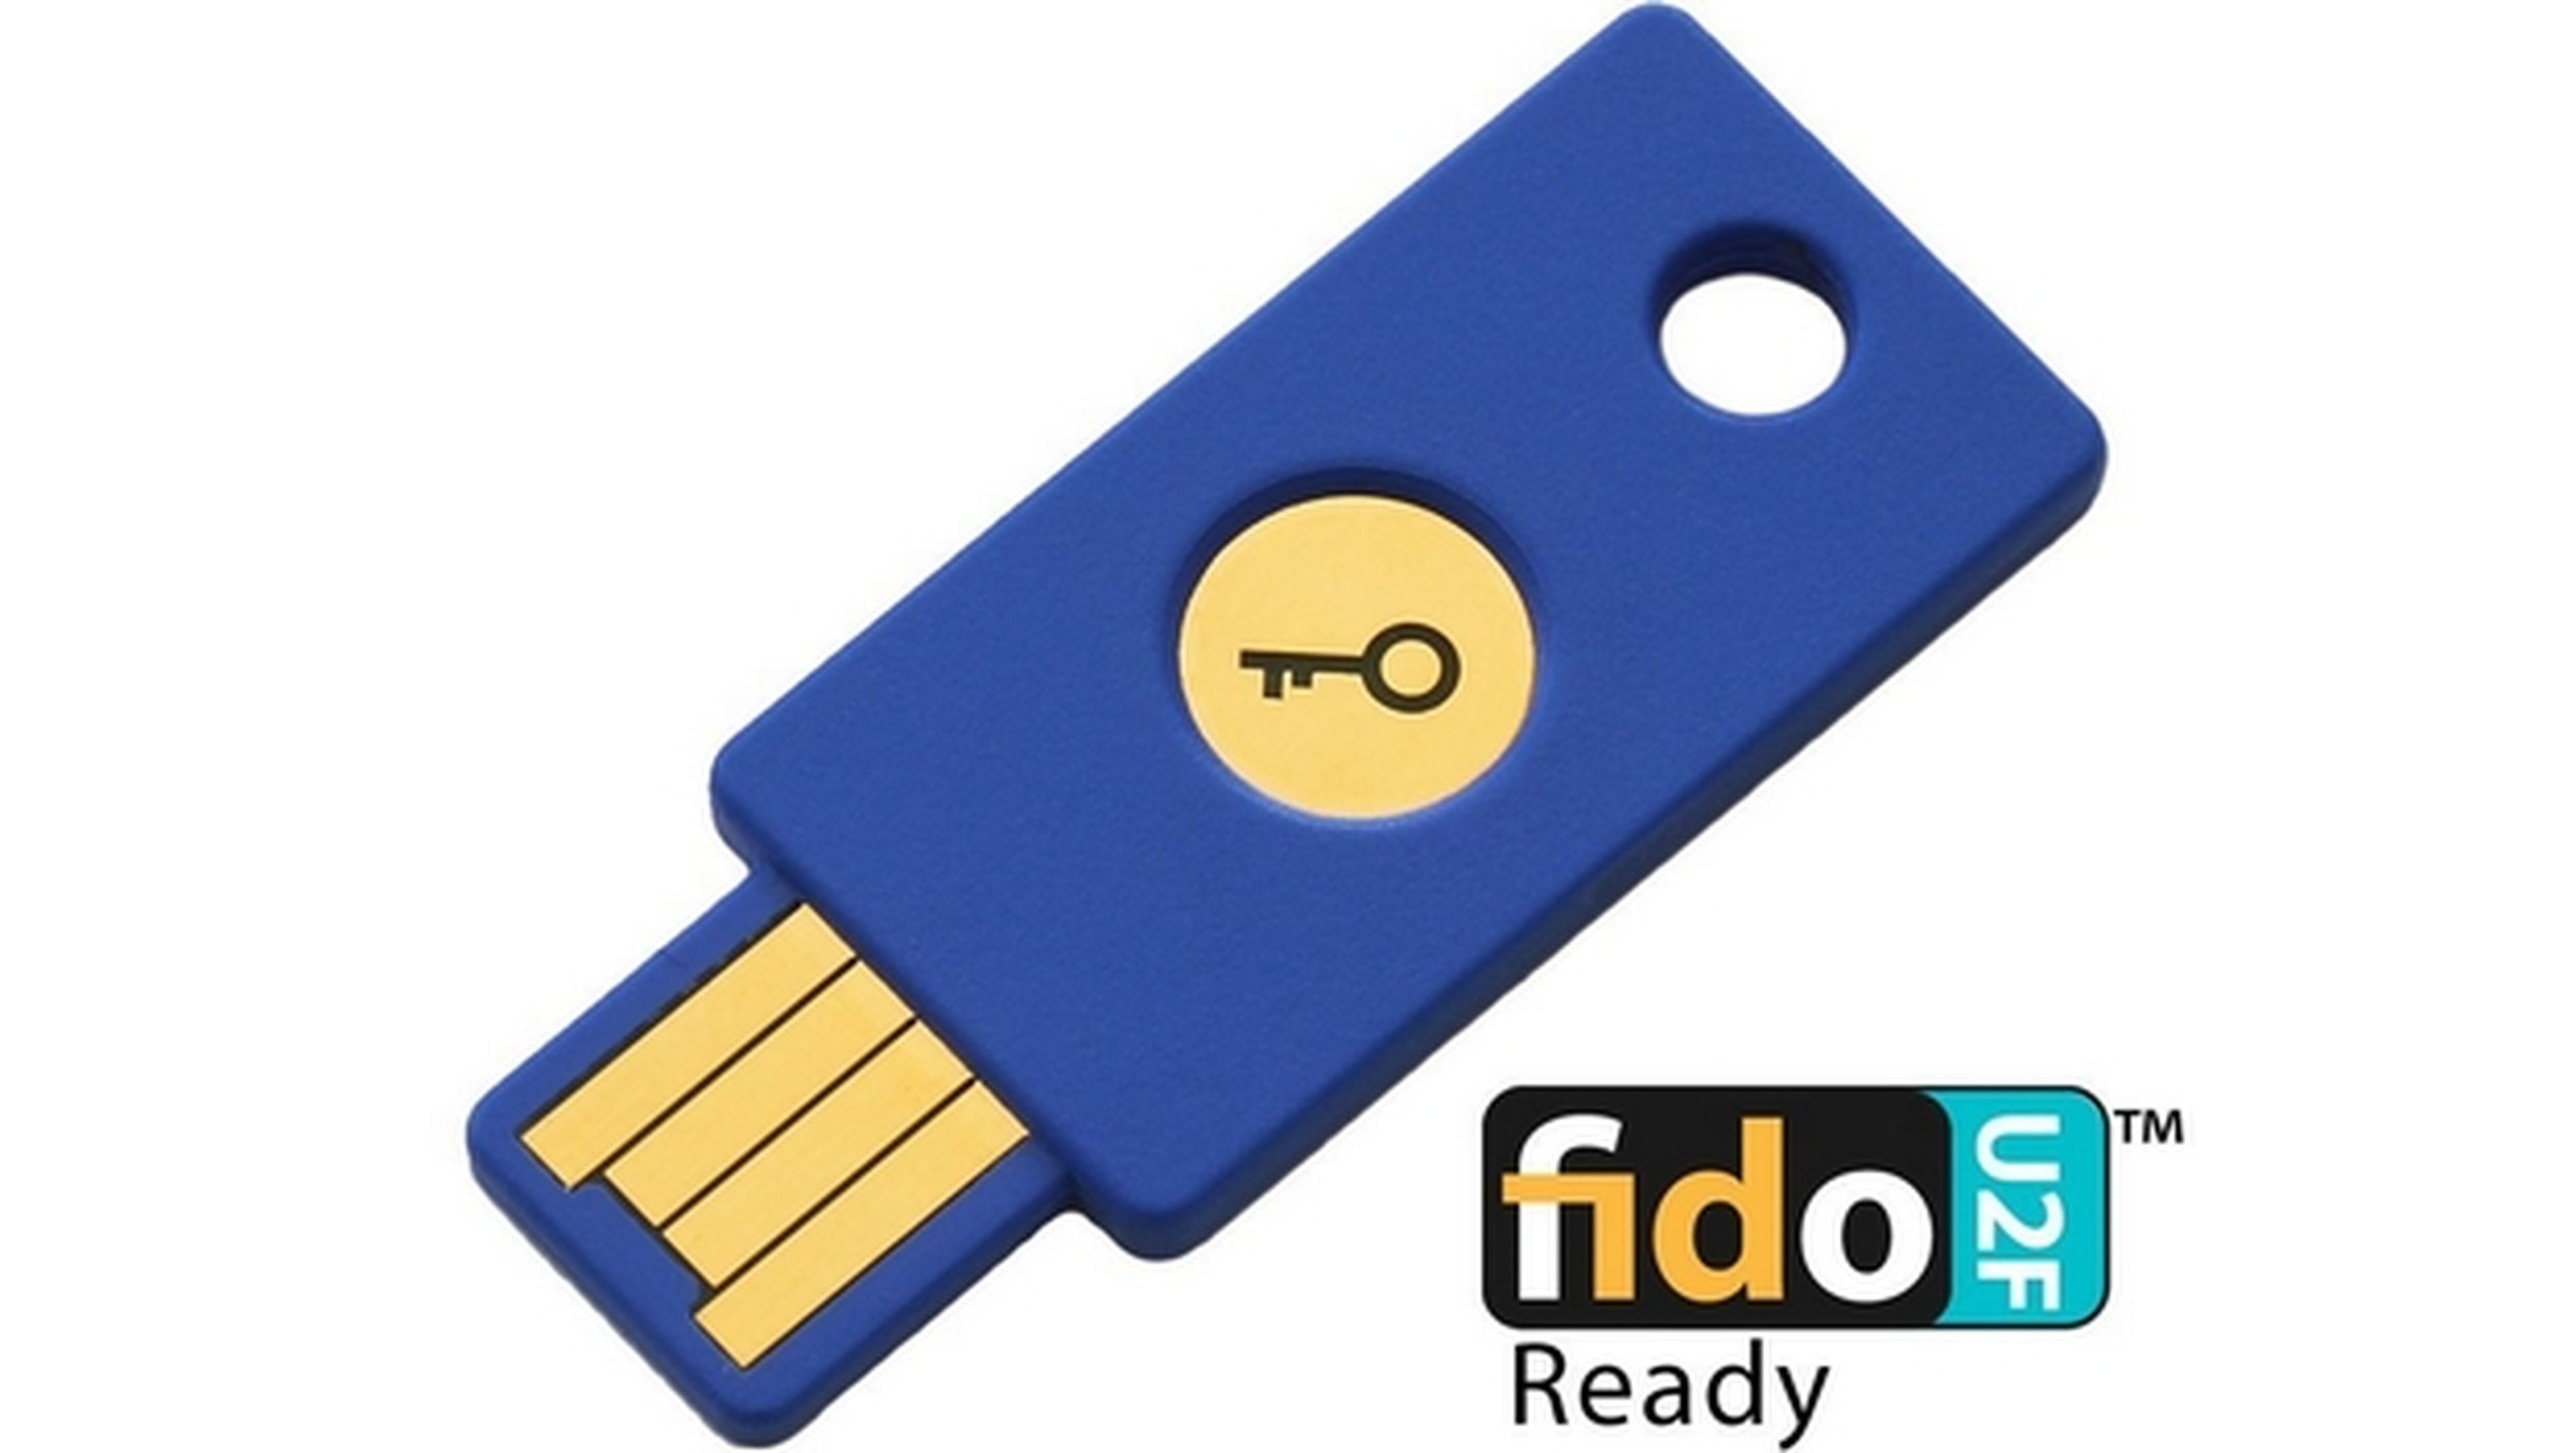 Google mejora la autentificación en dos pasos de sus cuentas Google con la llave USB física FIDO U2F.